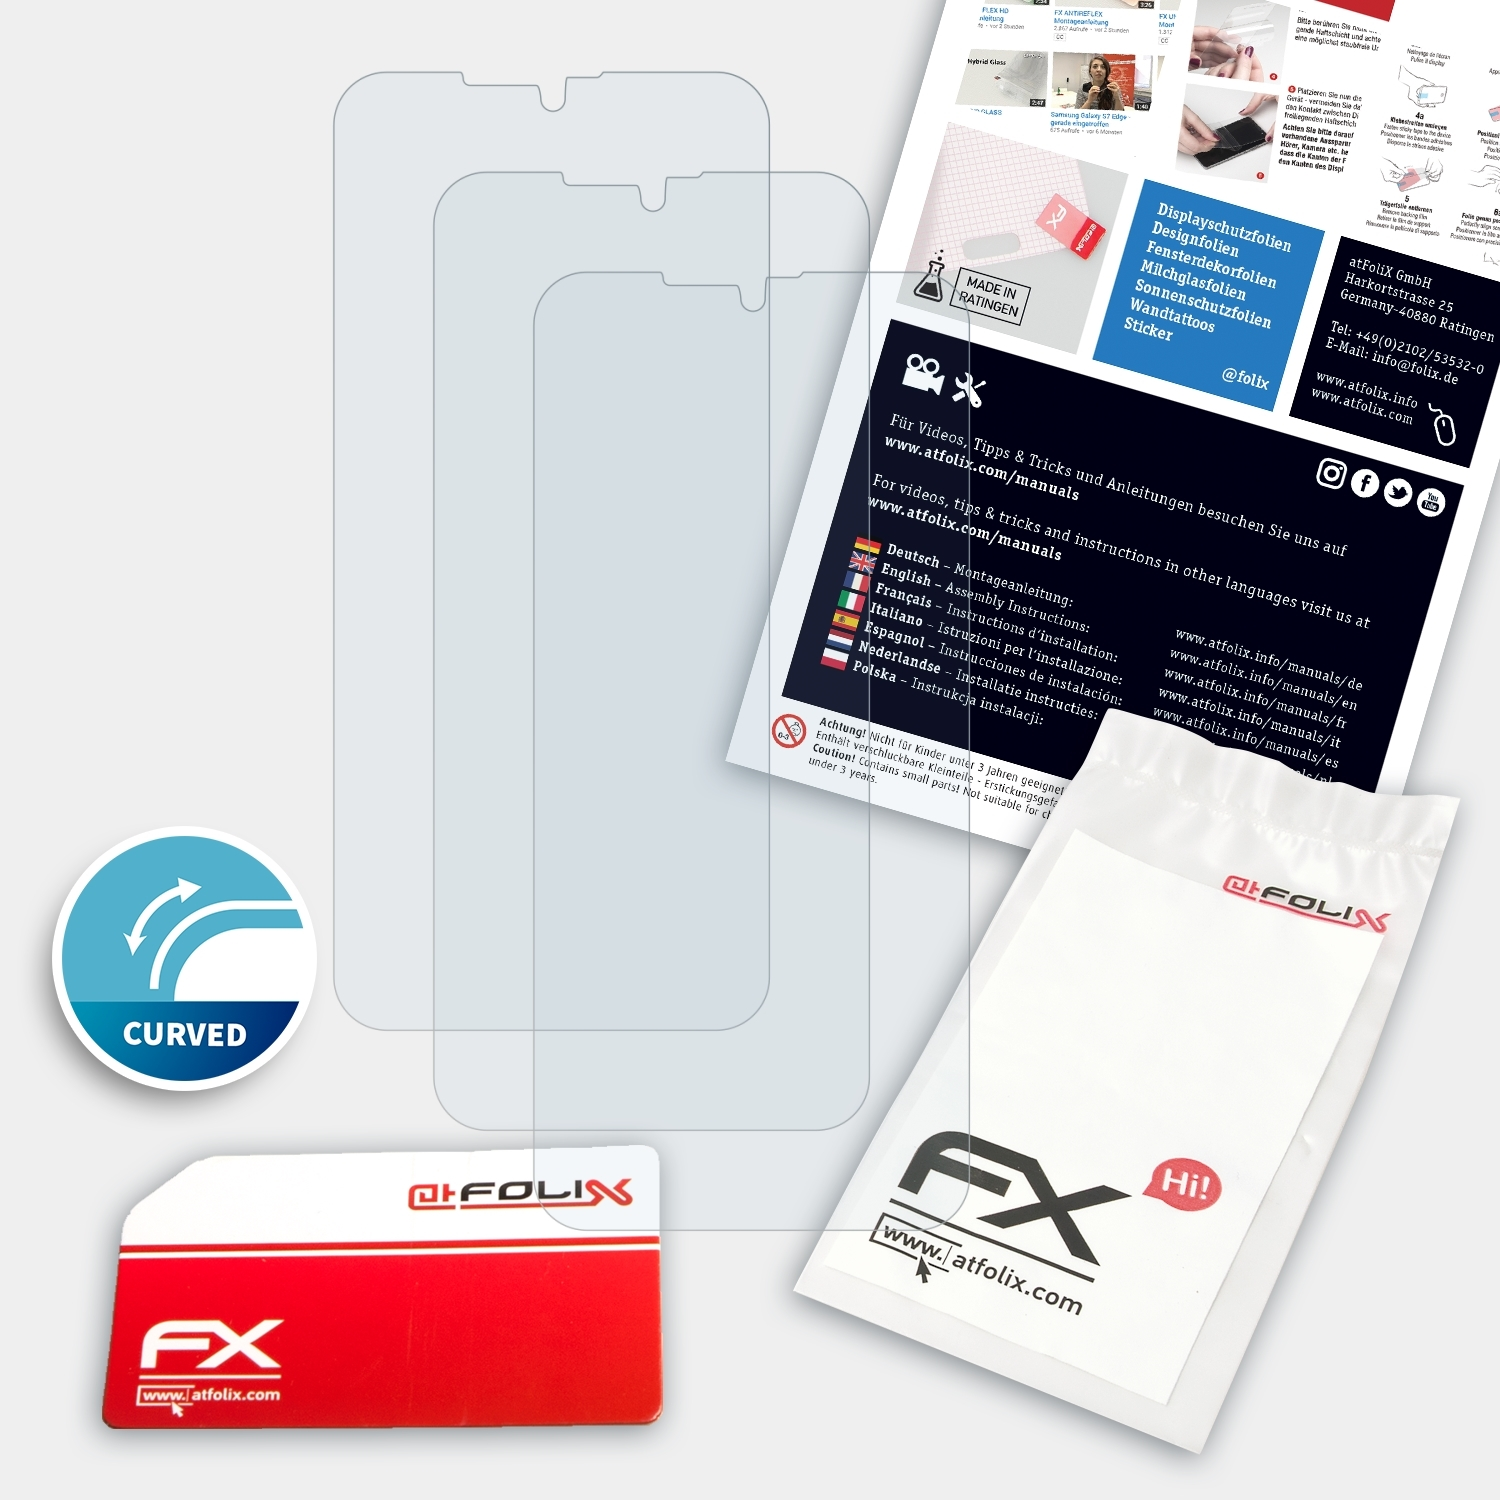 GS190) 3x ATFOLIX Gigaset FX-ActiFleX Displayschutz(für